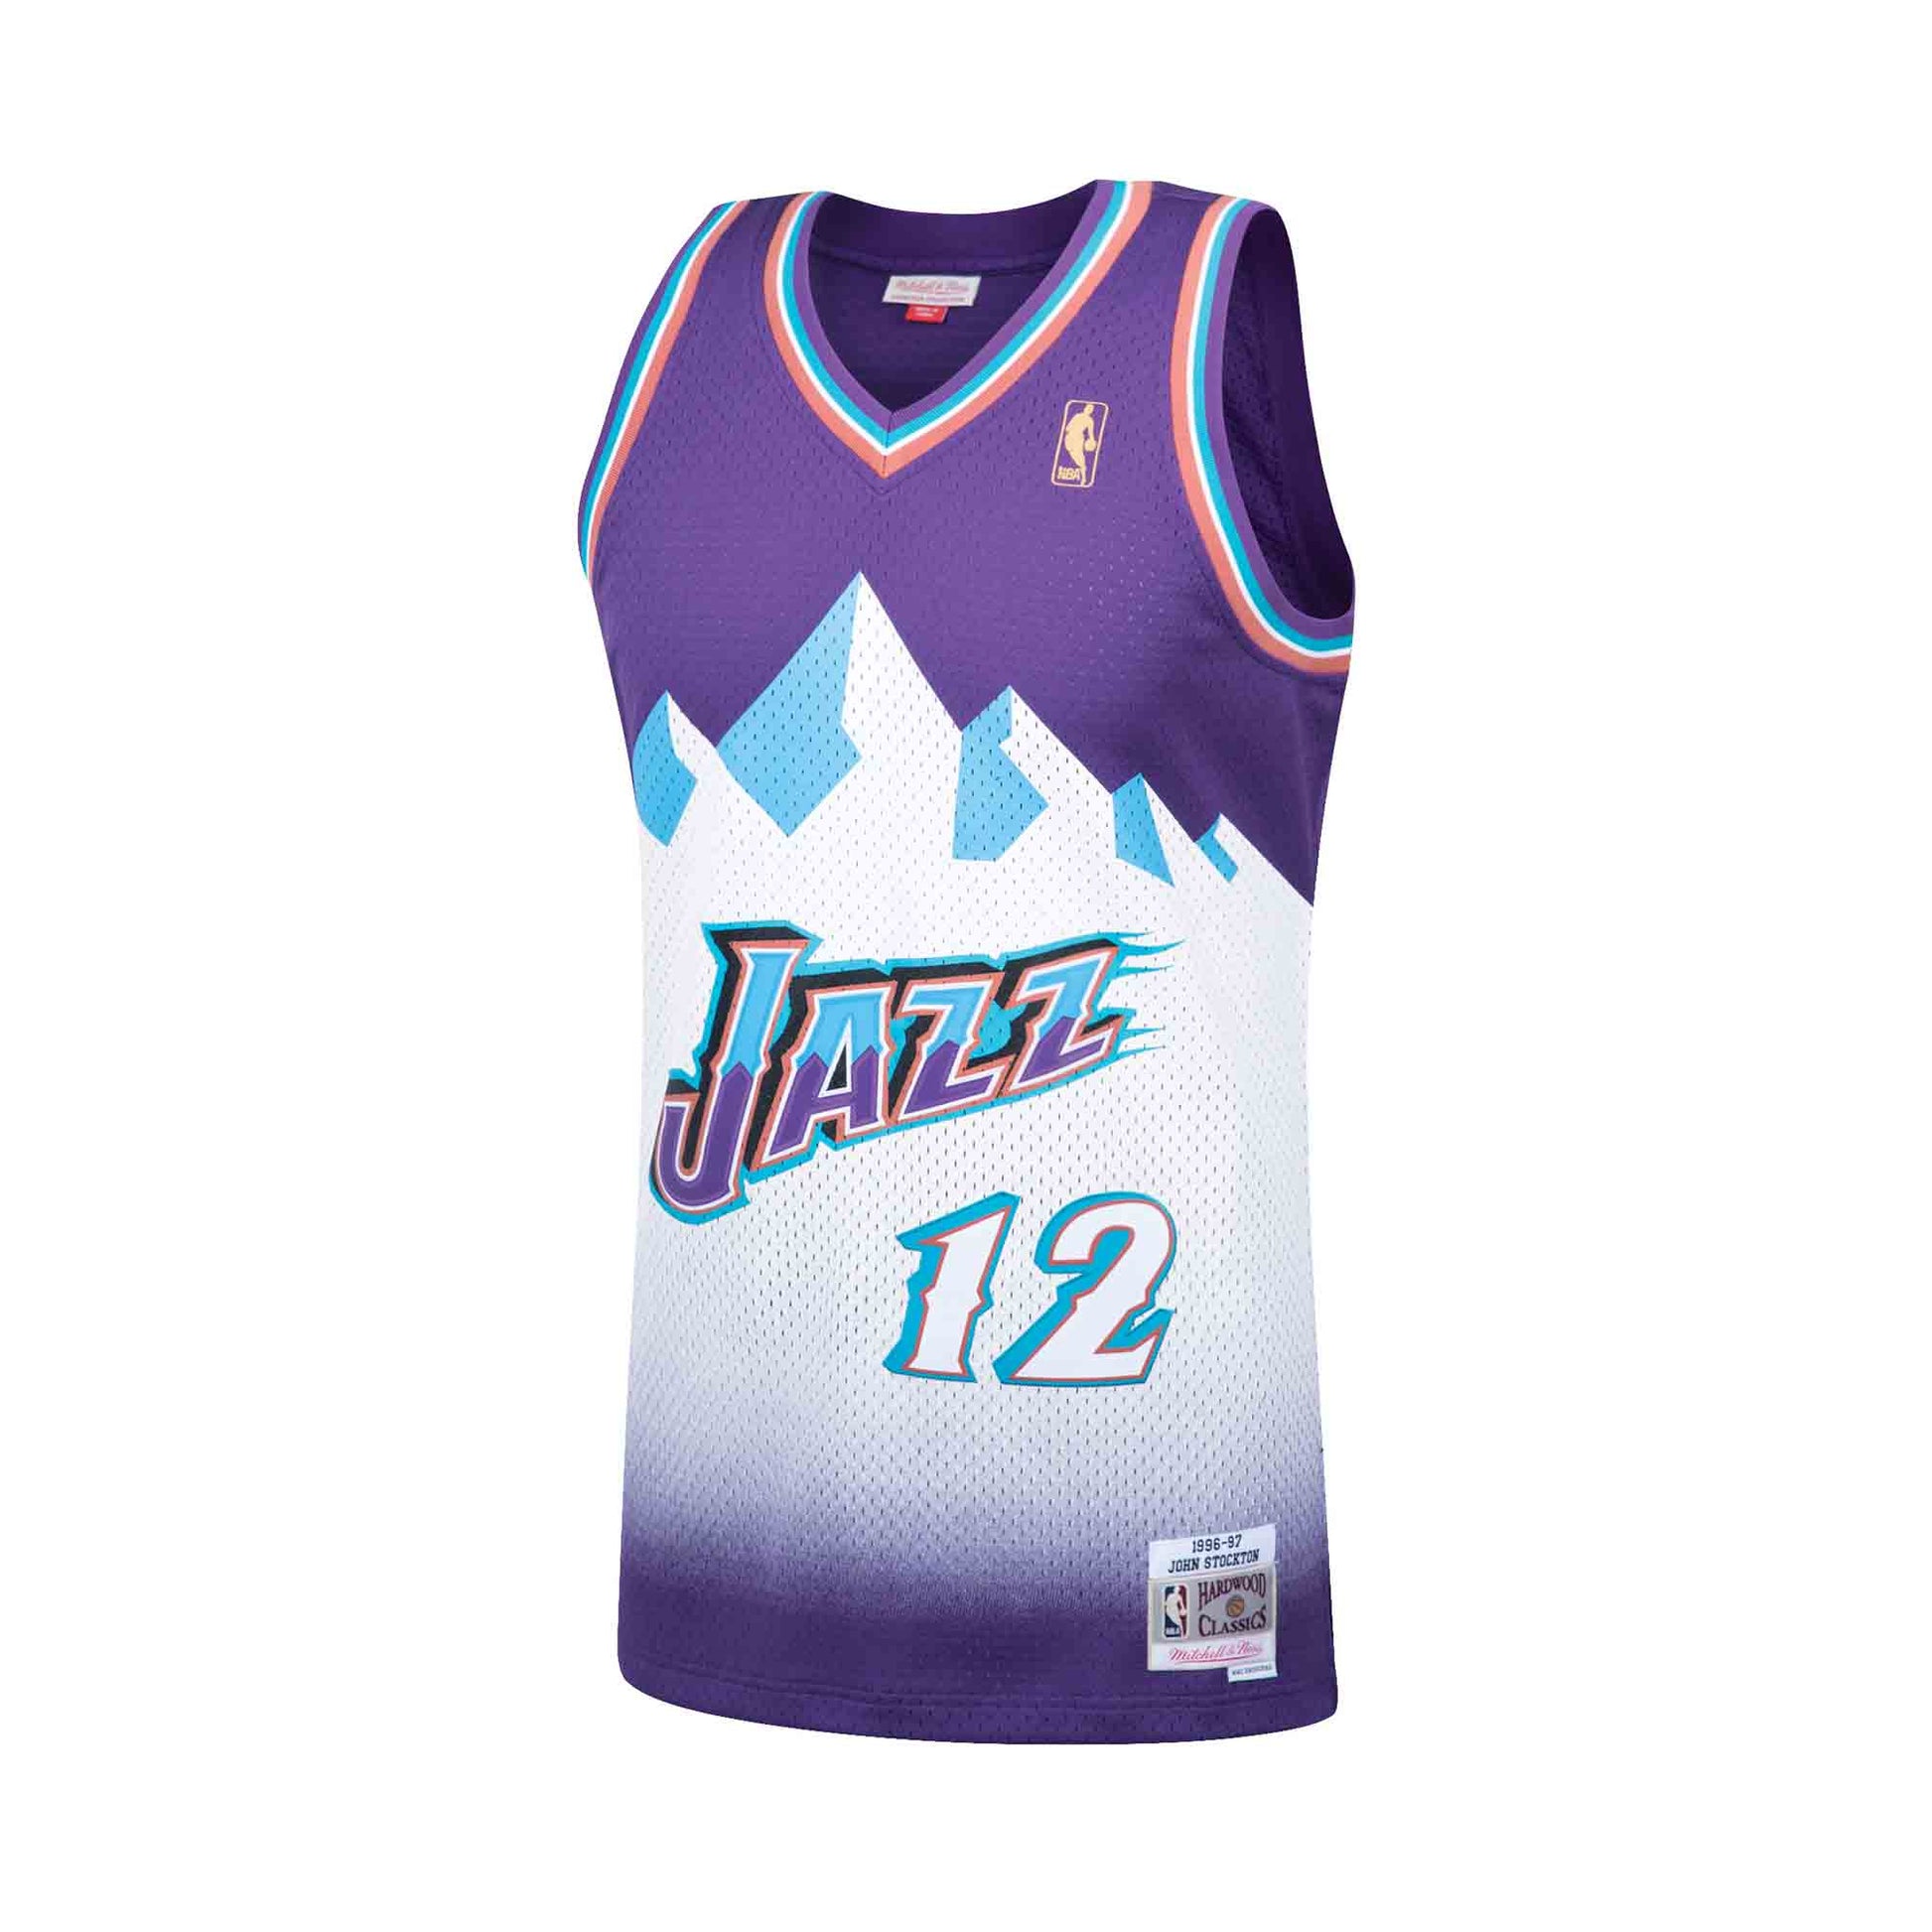 Utah Jazz Purple NBA Fan Jerseys for sale